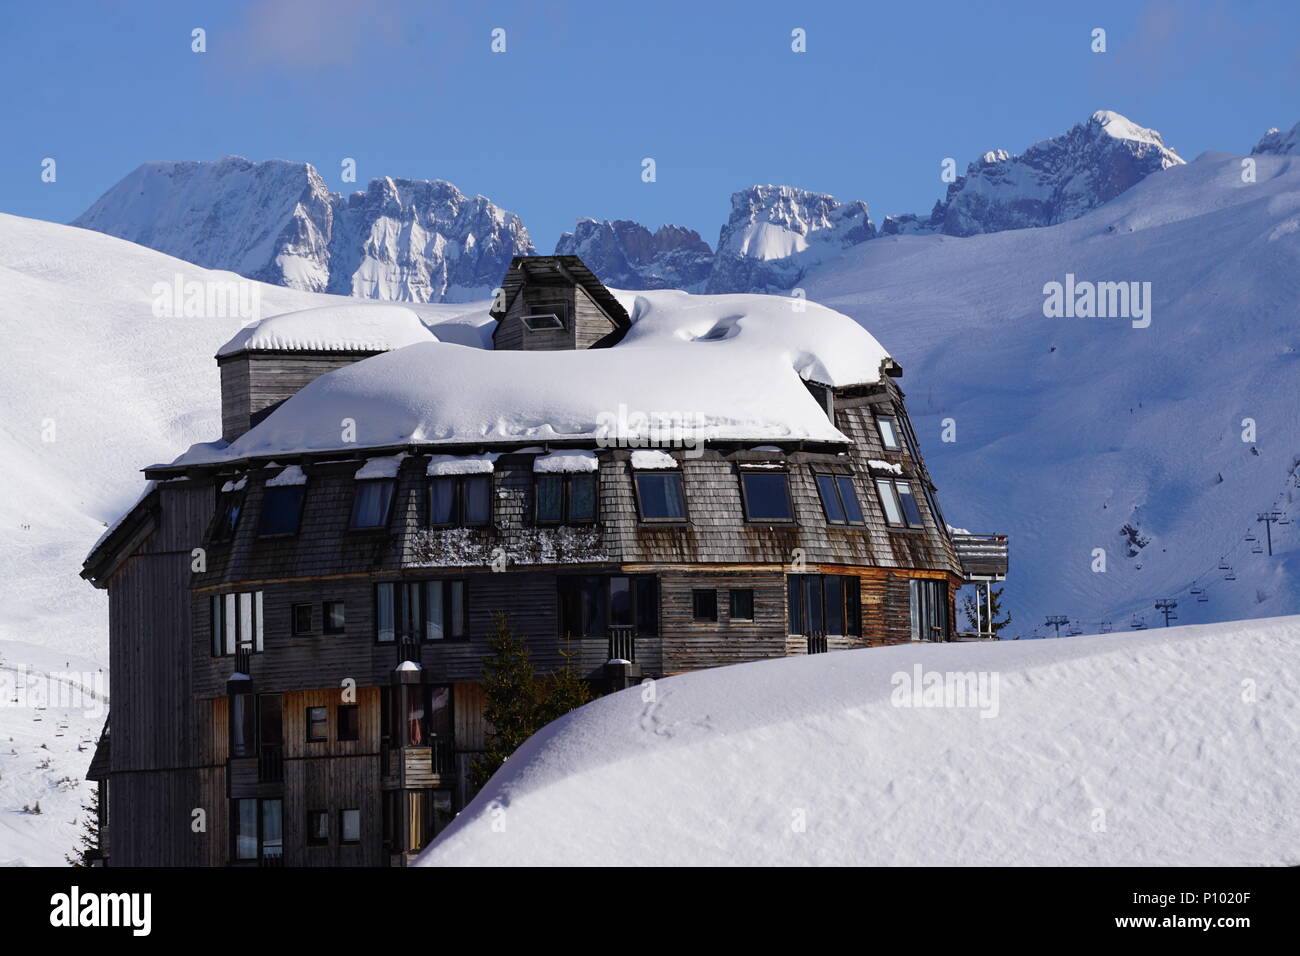 Architettura inusuale della stazione sciistica di Avoriaz, Francia su una bella e soleggiata giornata invernale con le Alpi in background Foto Stock